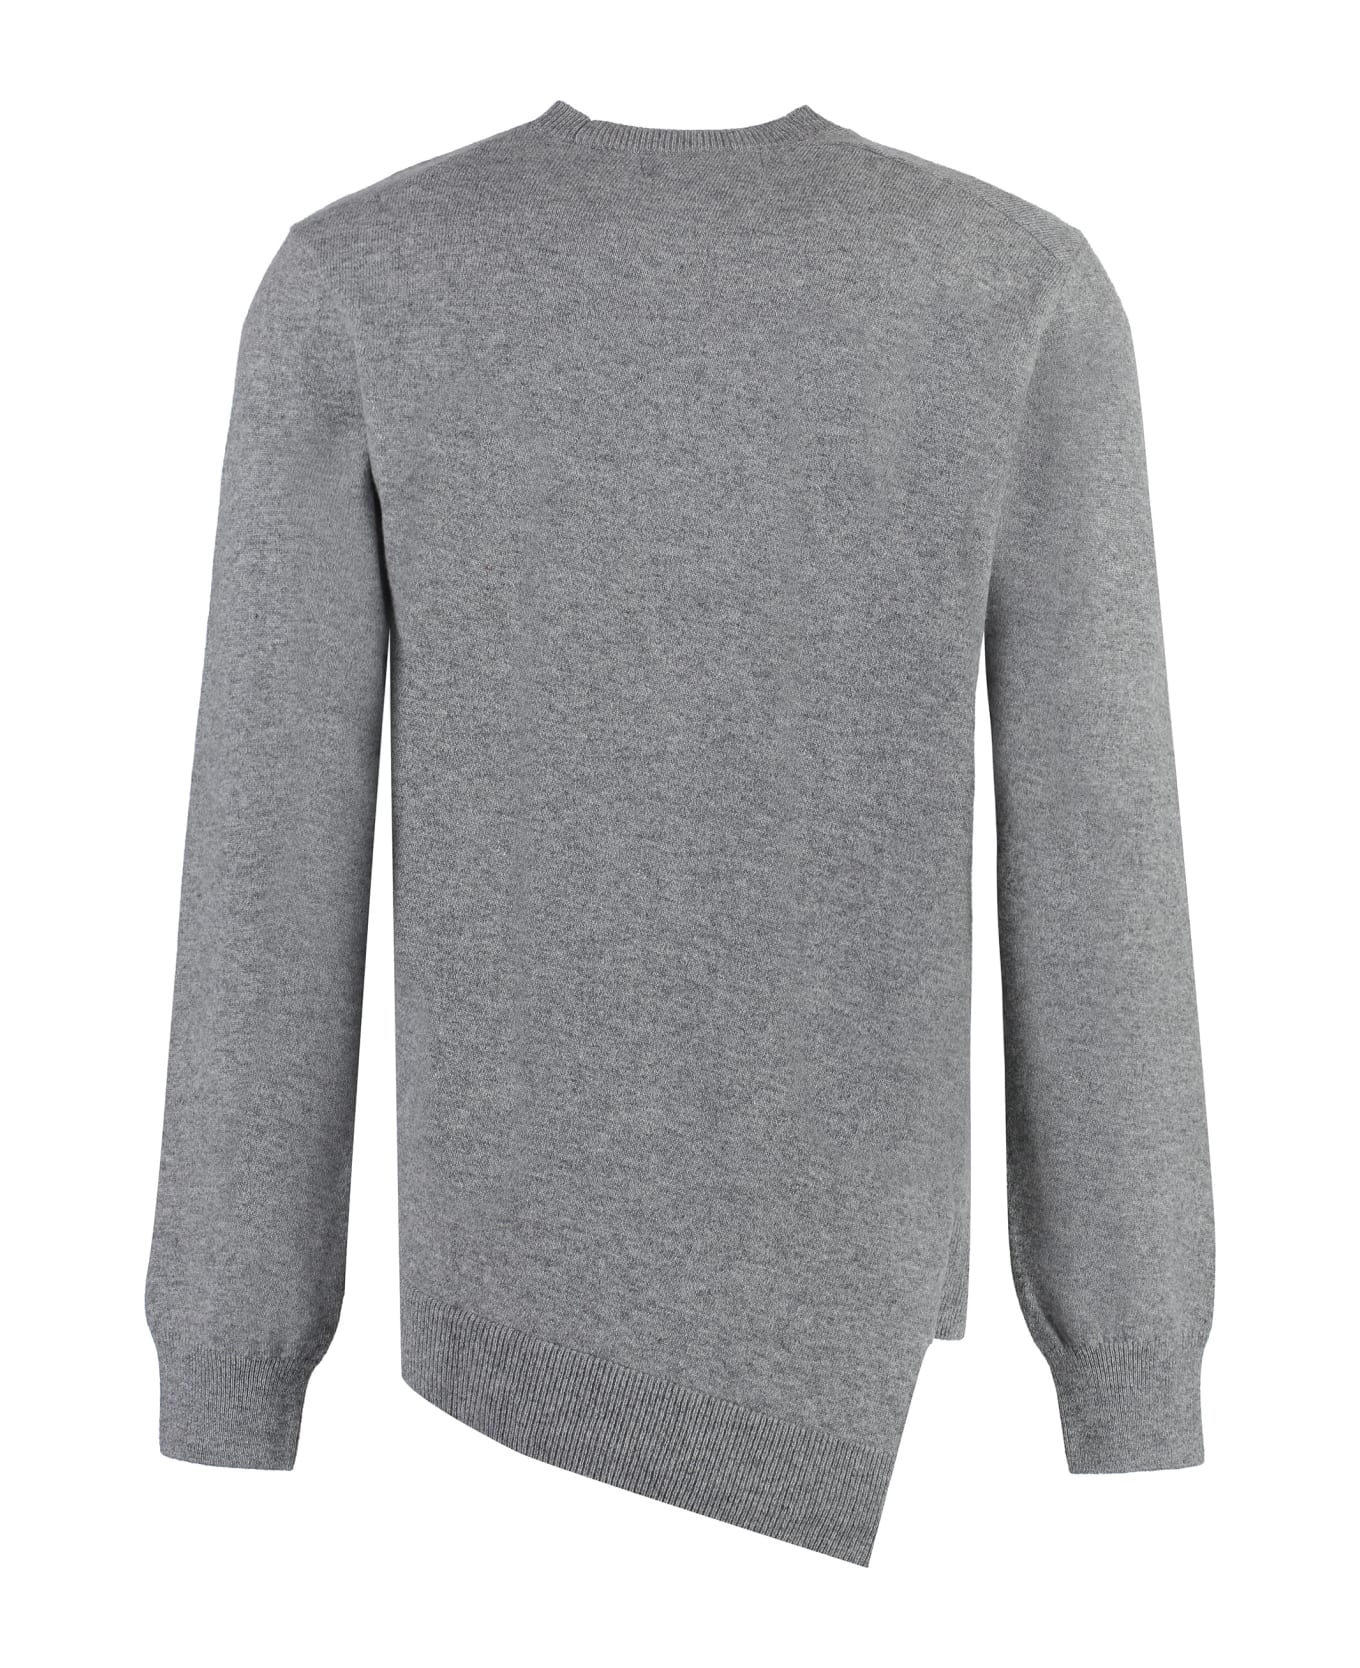 Comme des Garçons Shirt Lacoste X Comme Des Garçons - Crew-neck Wool Sweater - grey